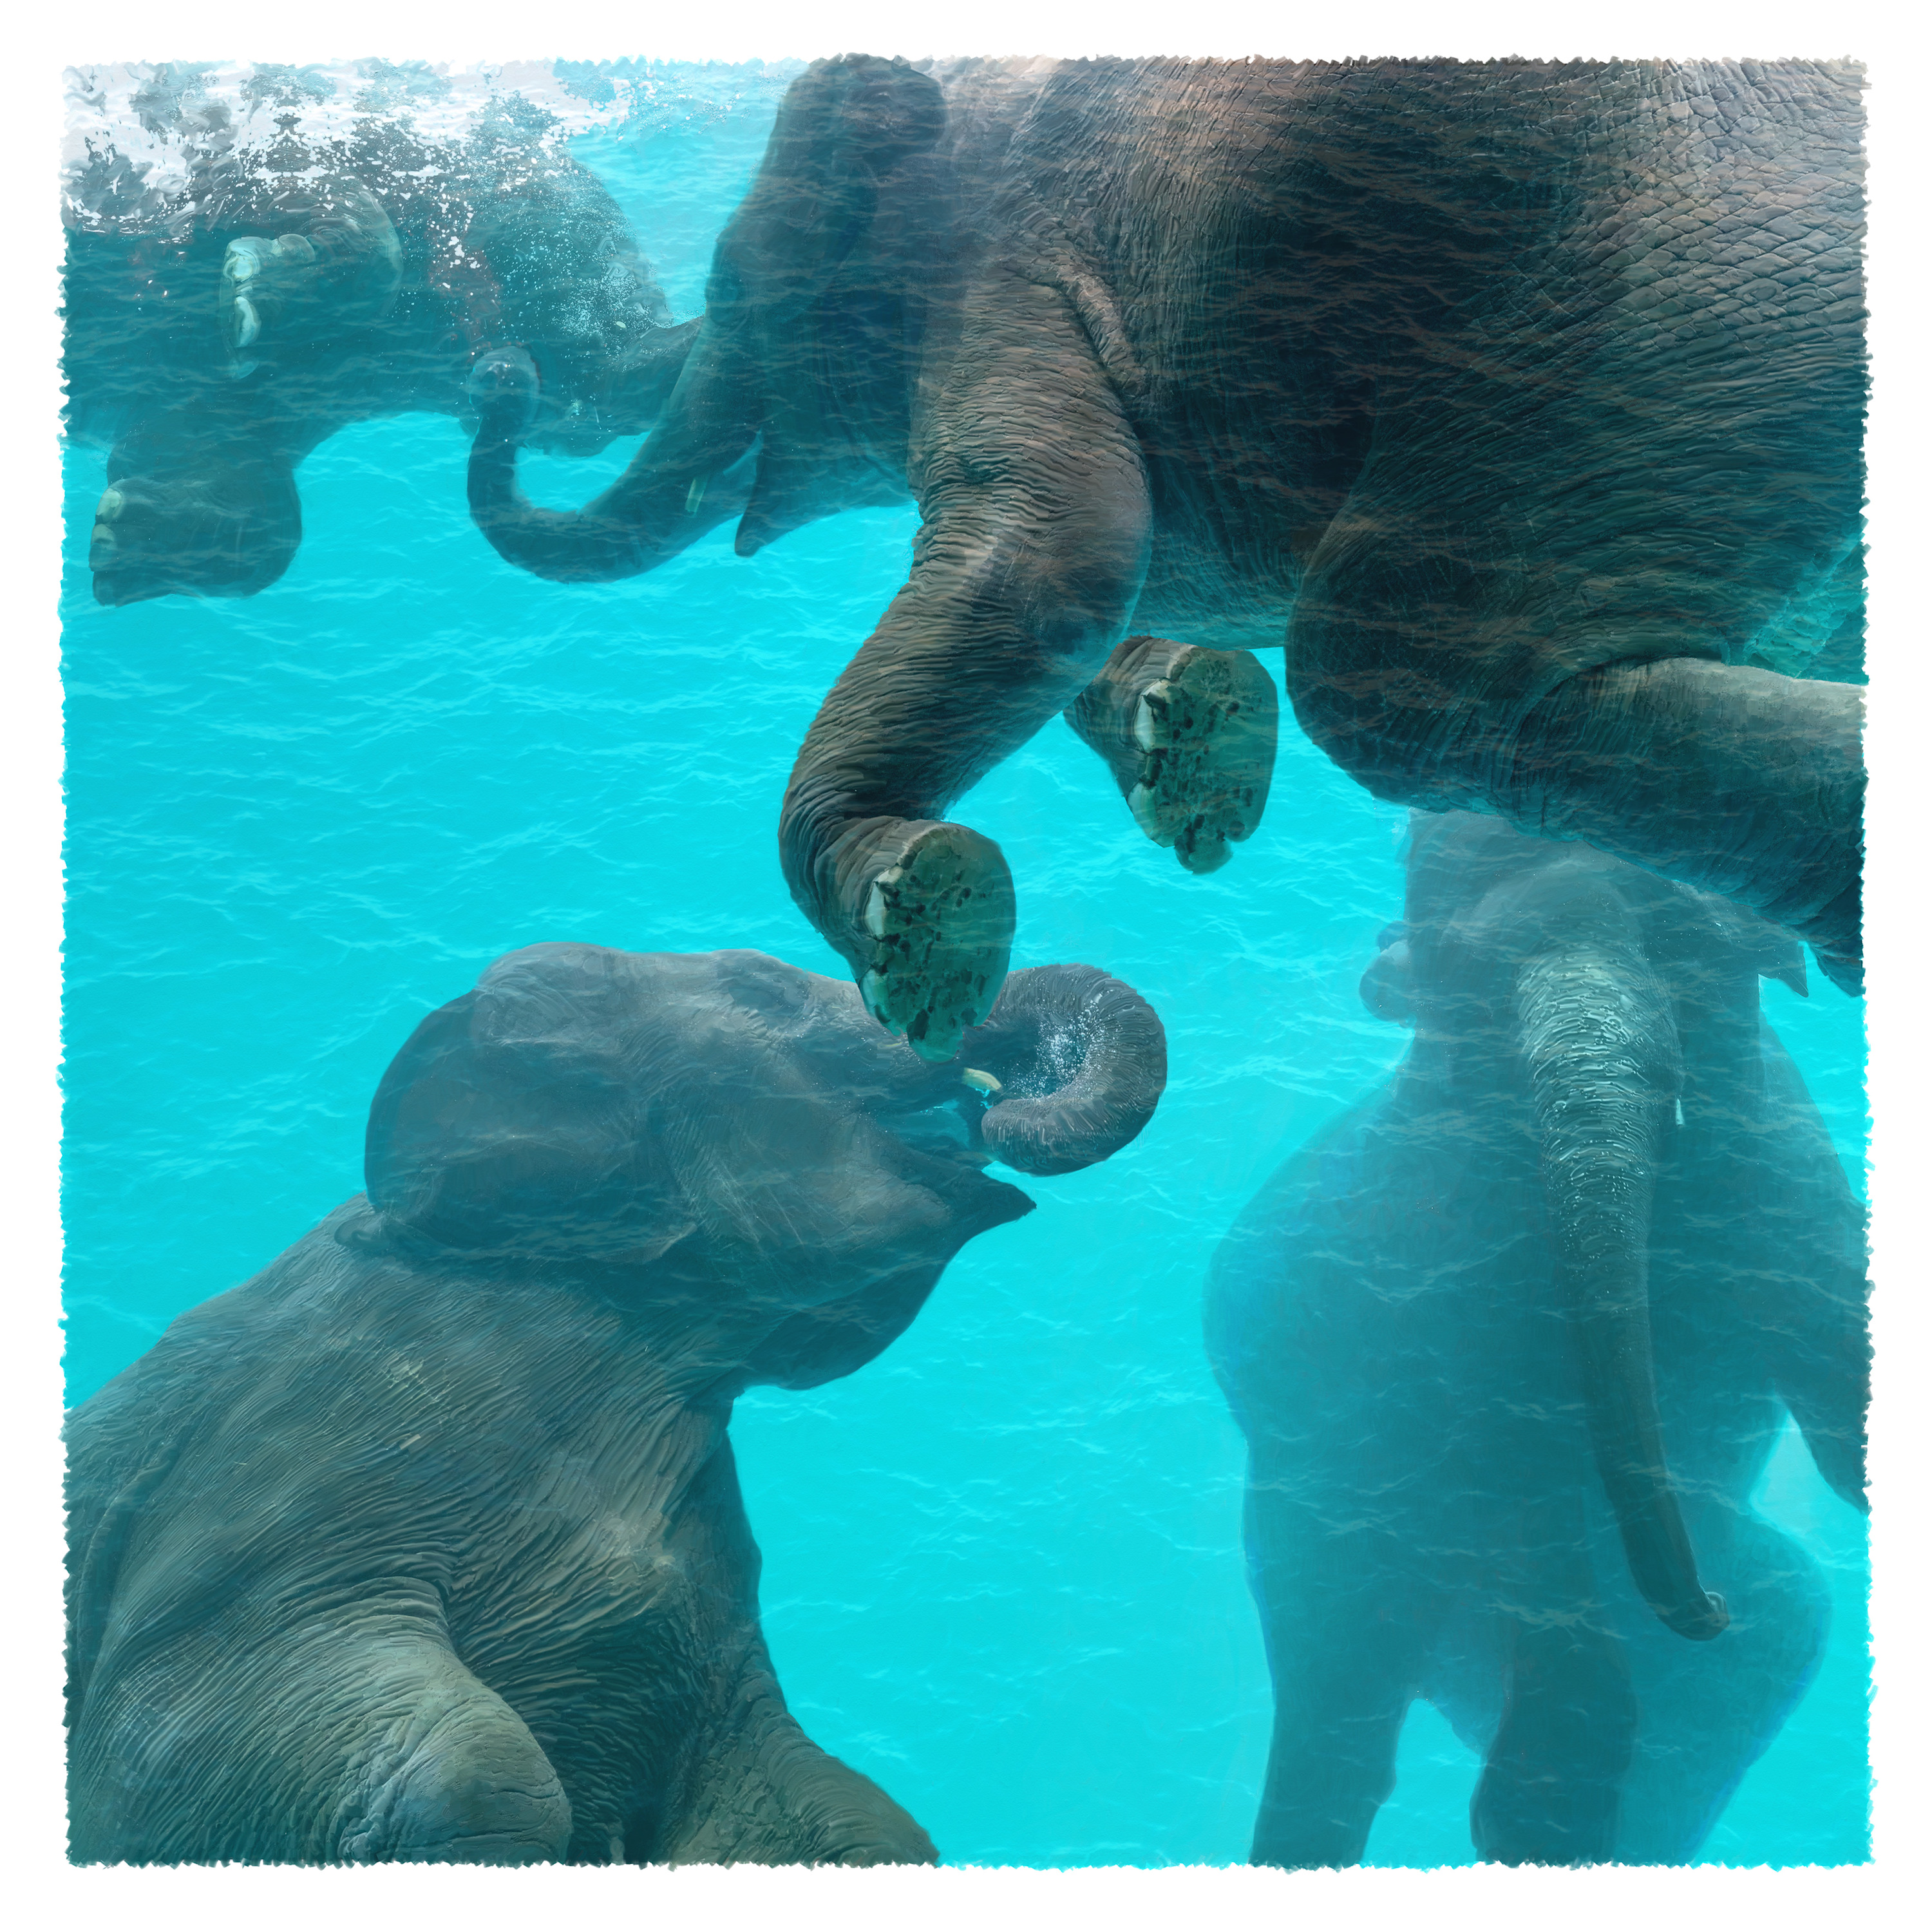 Water ballet elephants og1gc4